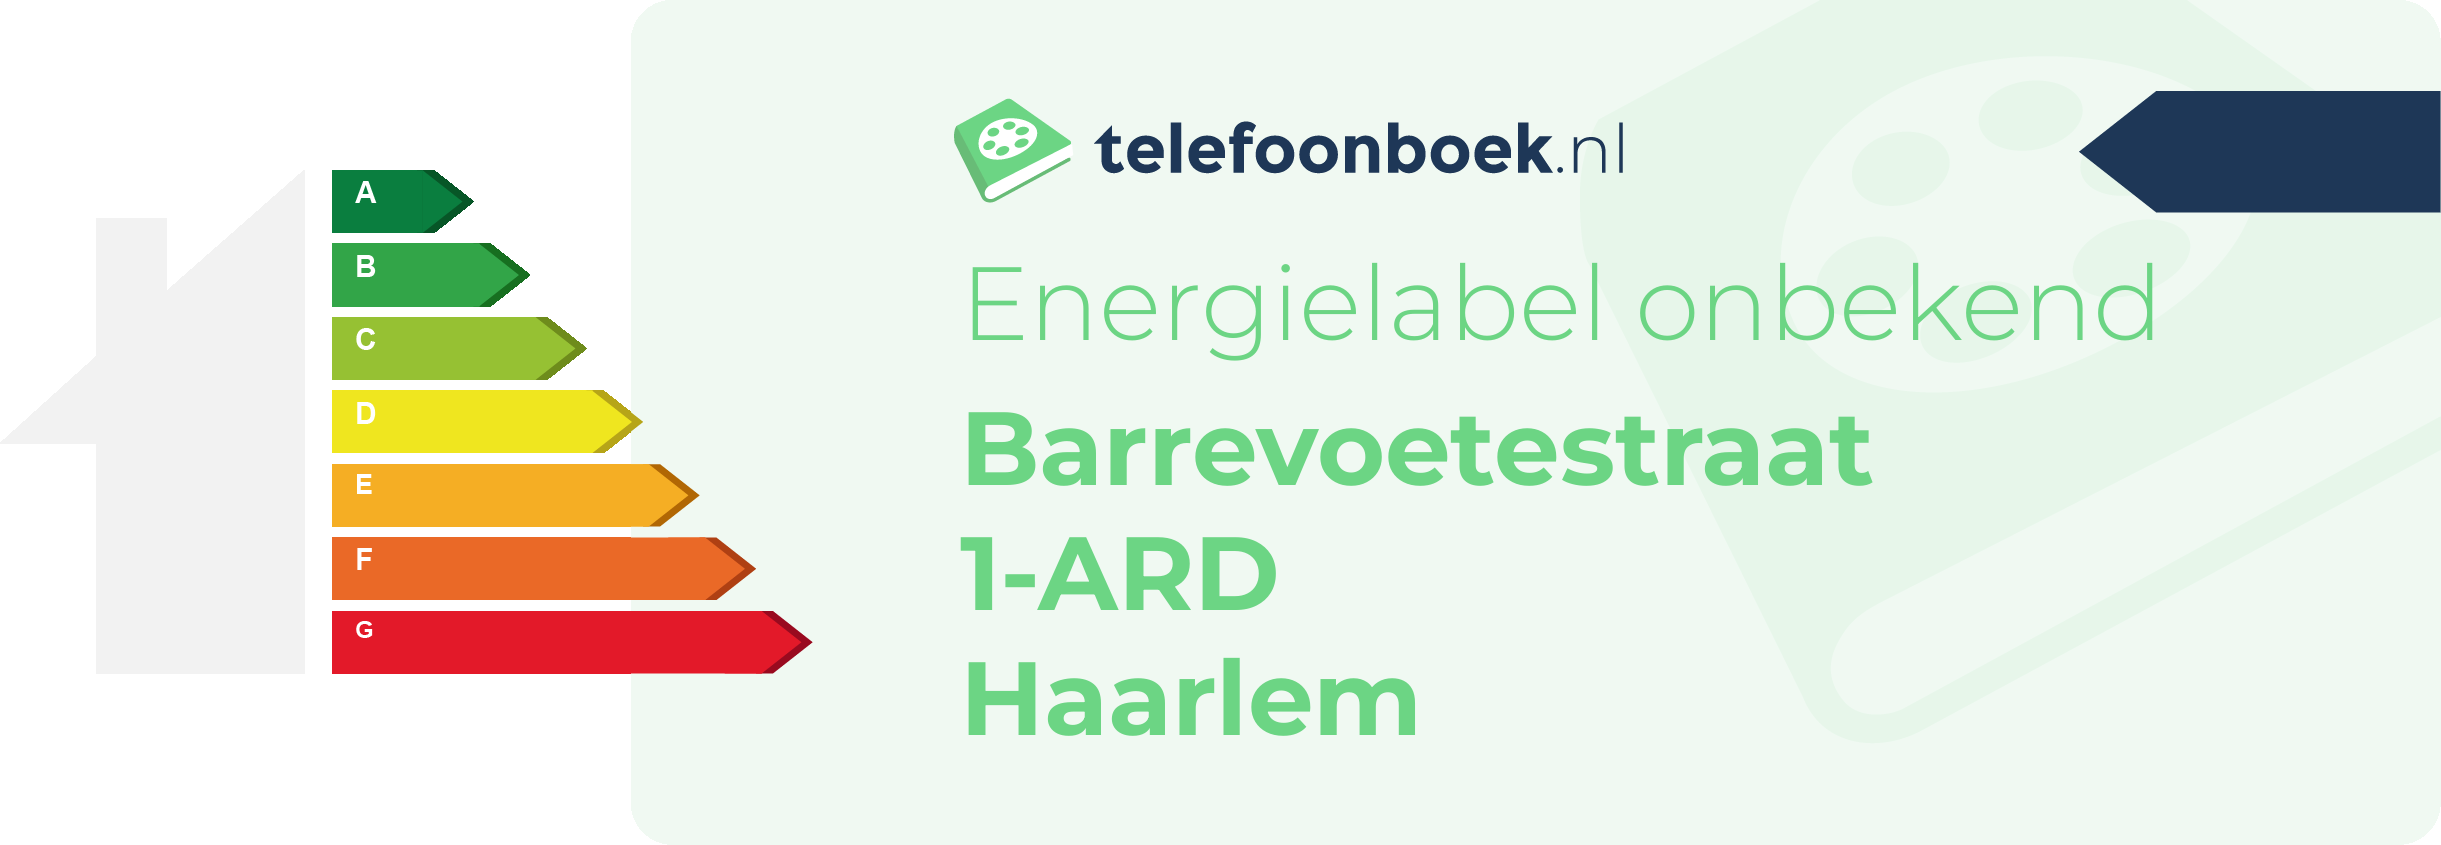 Energielabel Barrevoetestraat 1-ARD Haarlem